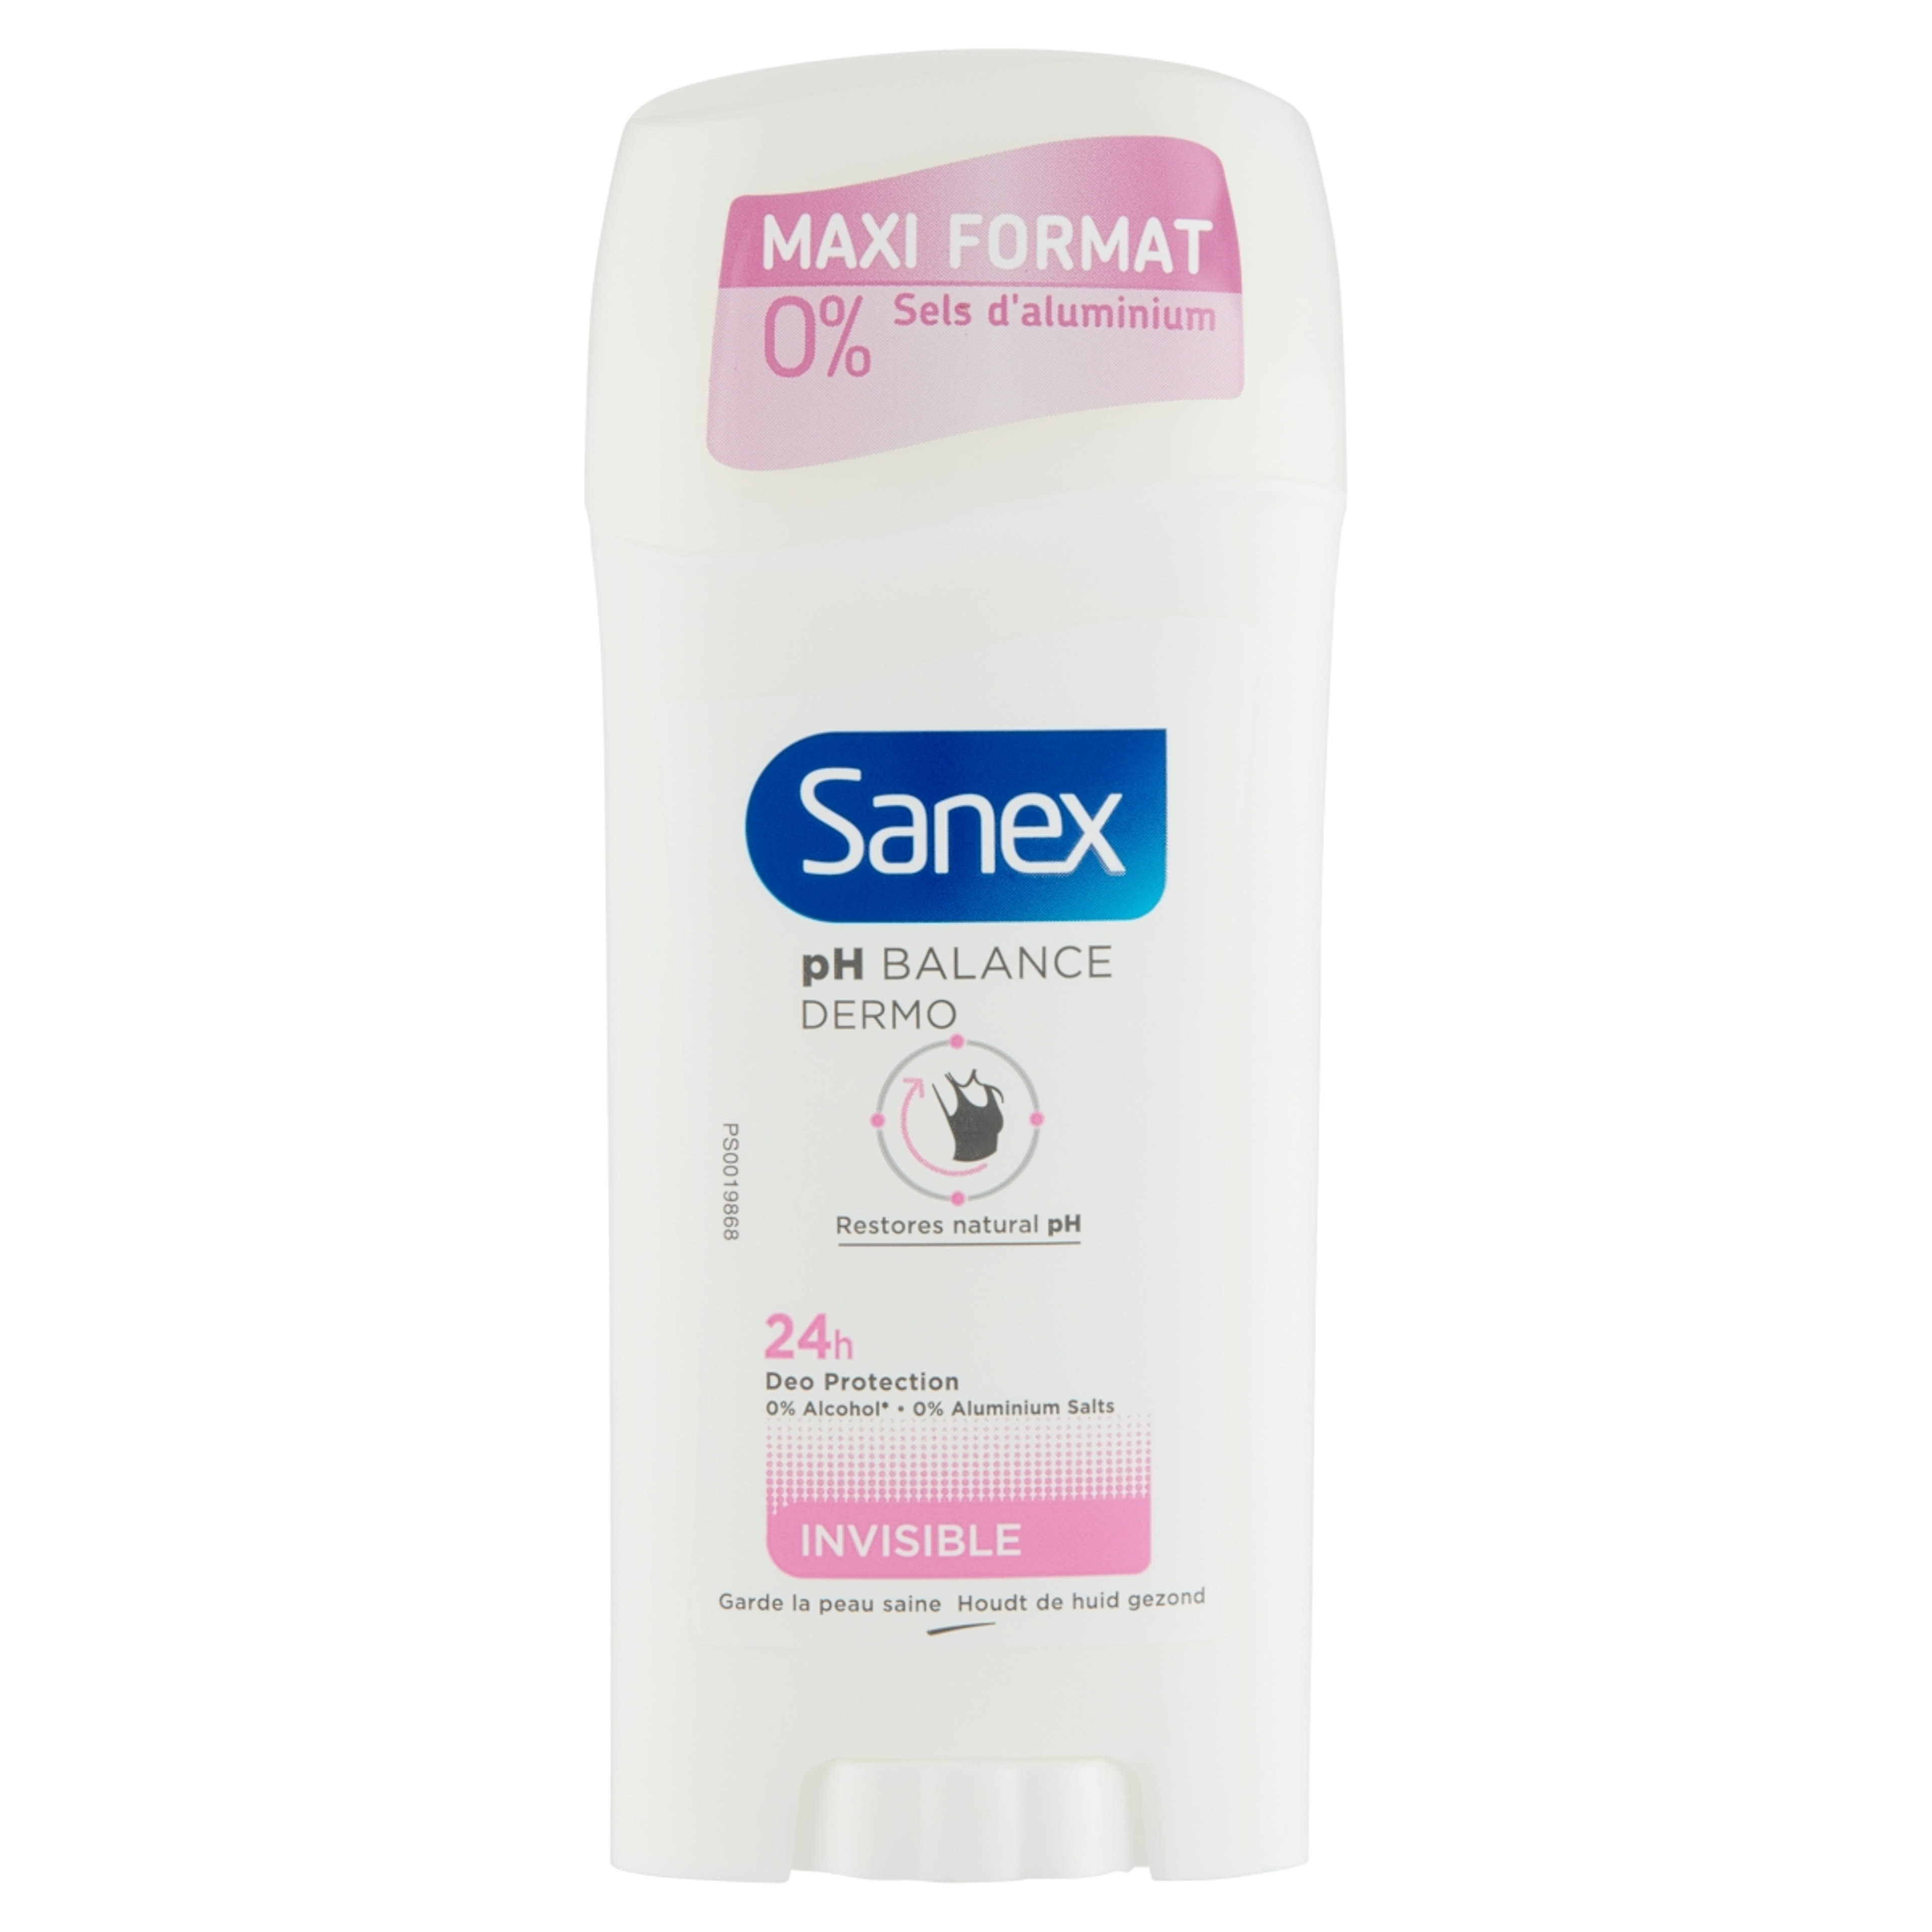 Sanex pH Balance Dermo Invisible dezodor stift - 65 ml-1